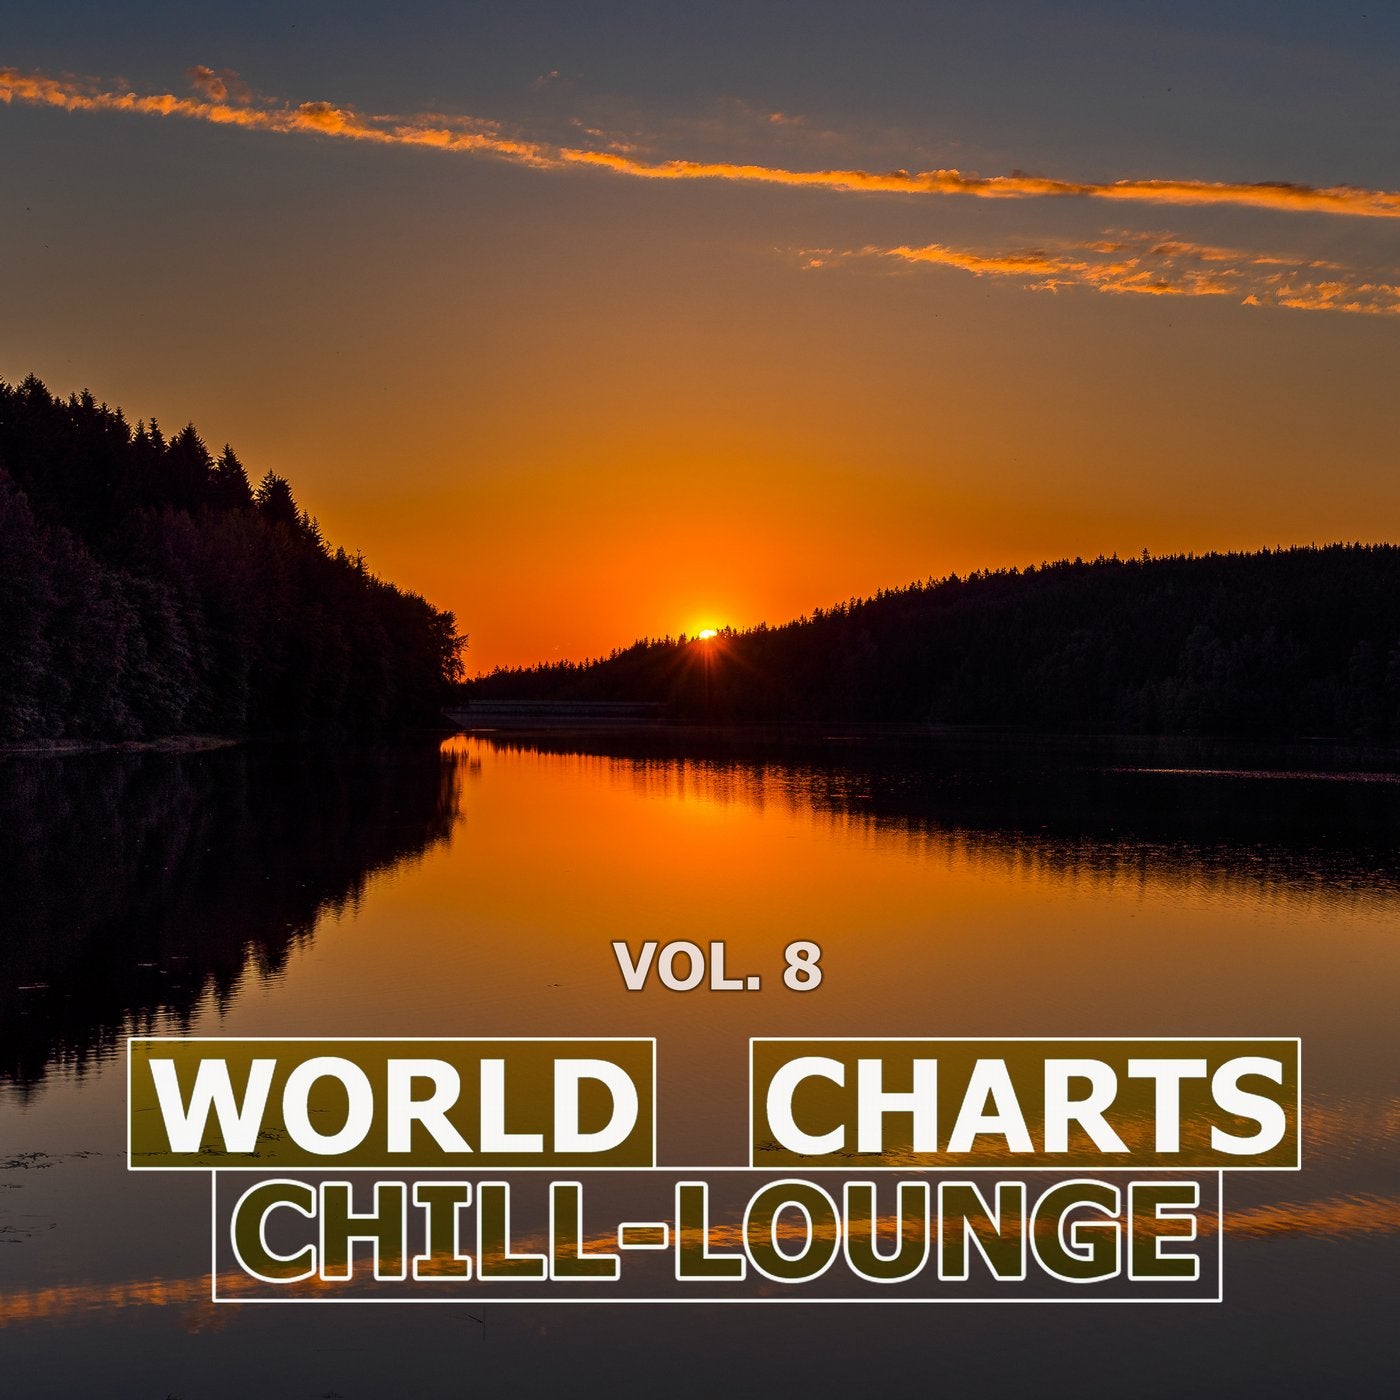 World Chill-Lounge Charts, Vol. 8